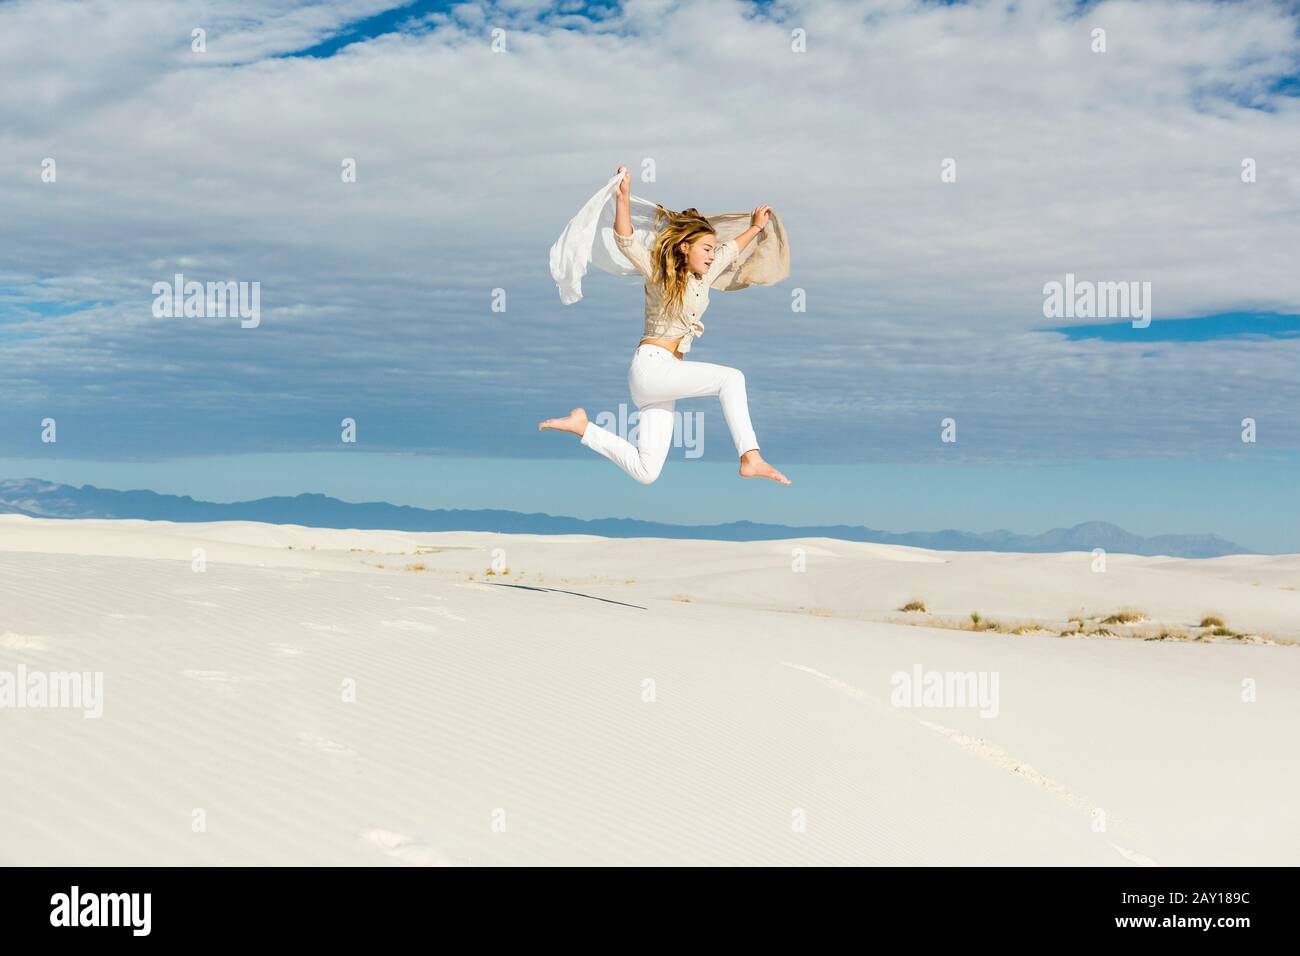 13 Jahre altes Mädchen tanzt und sprang mitten in der Luft auf dem Freigelände auf weißen Sanddünen Stockfoto